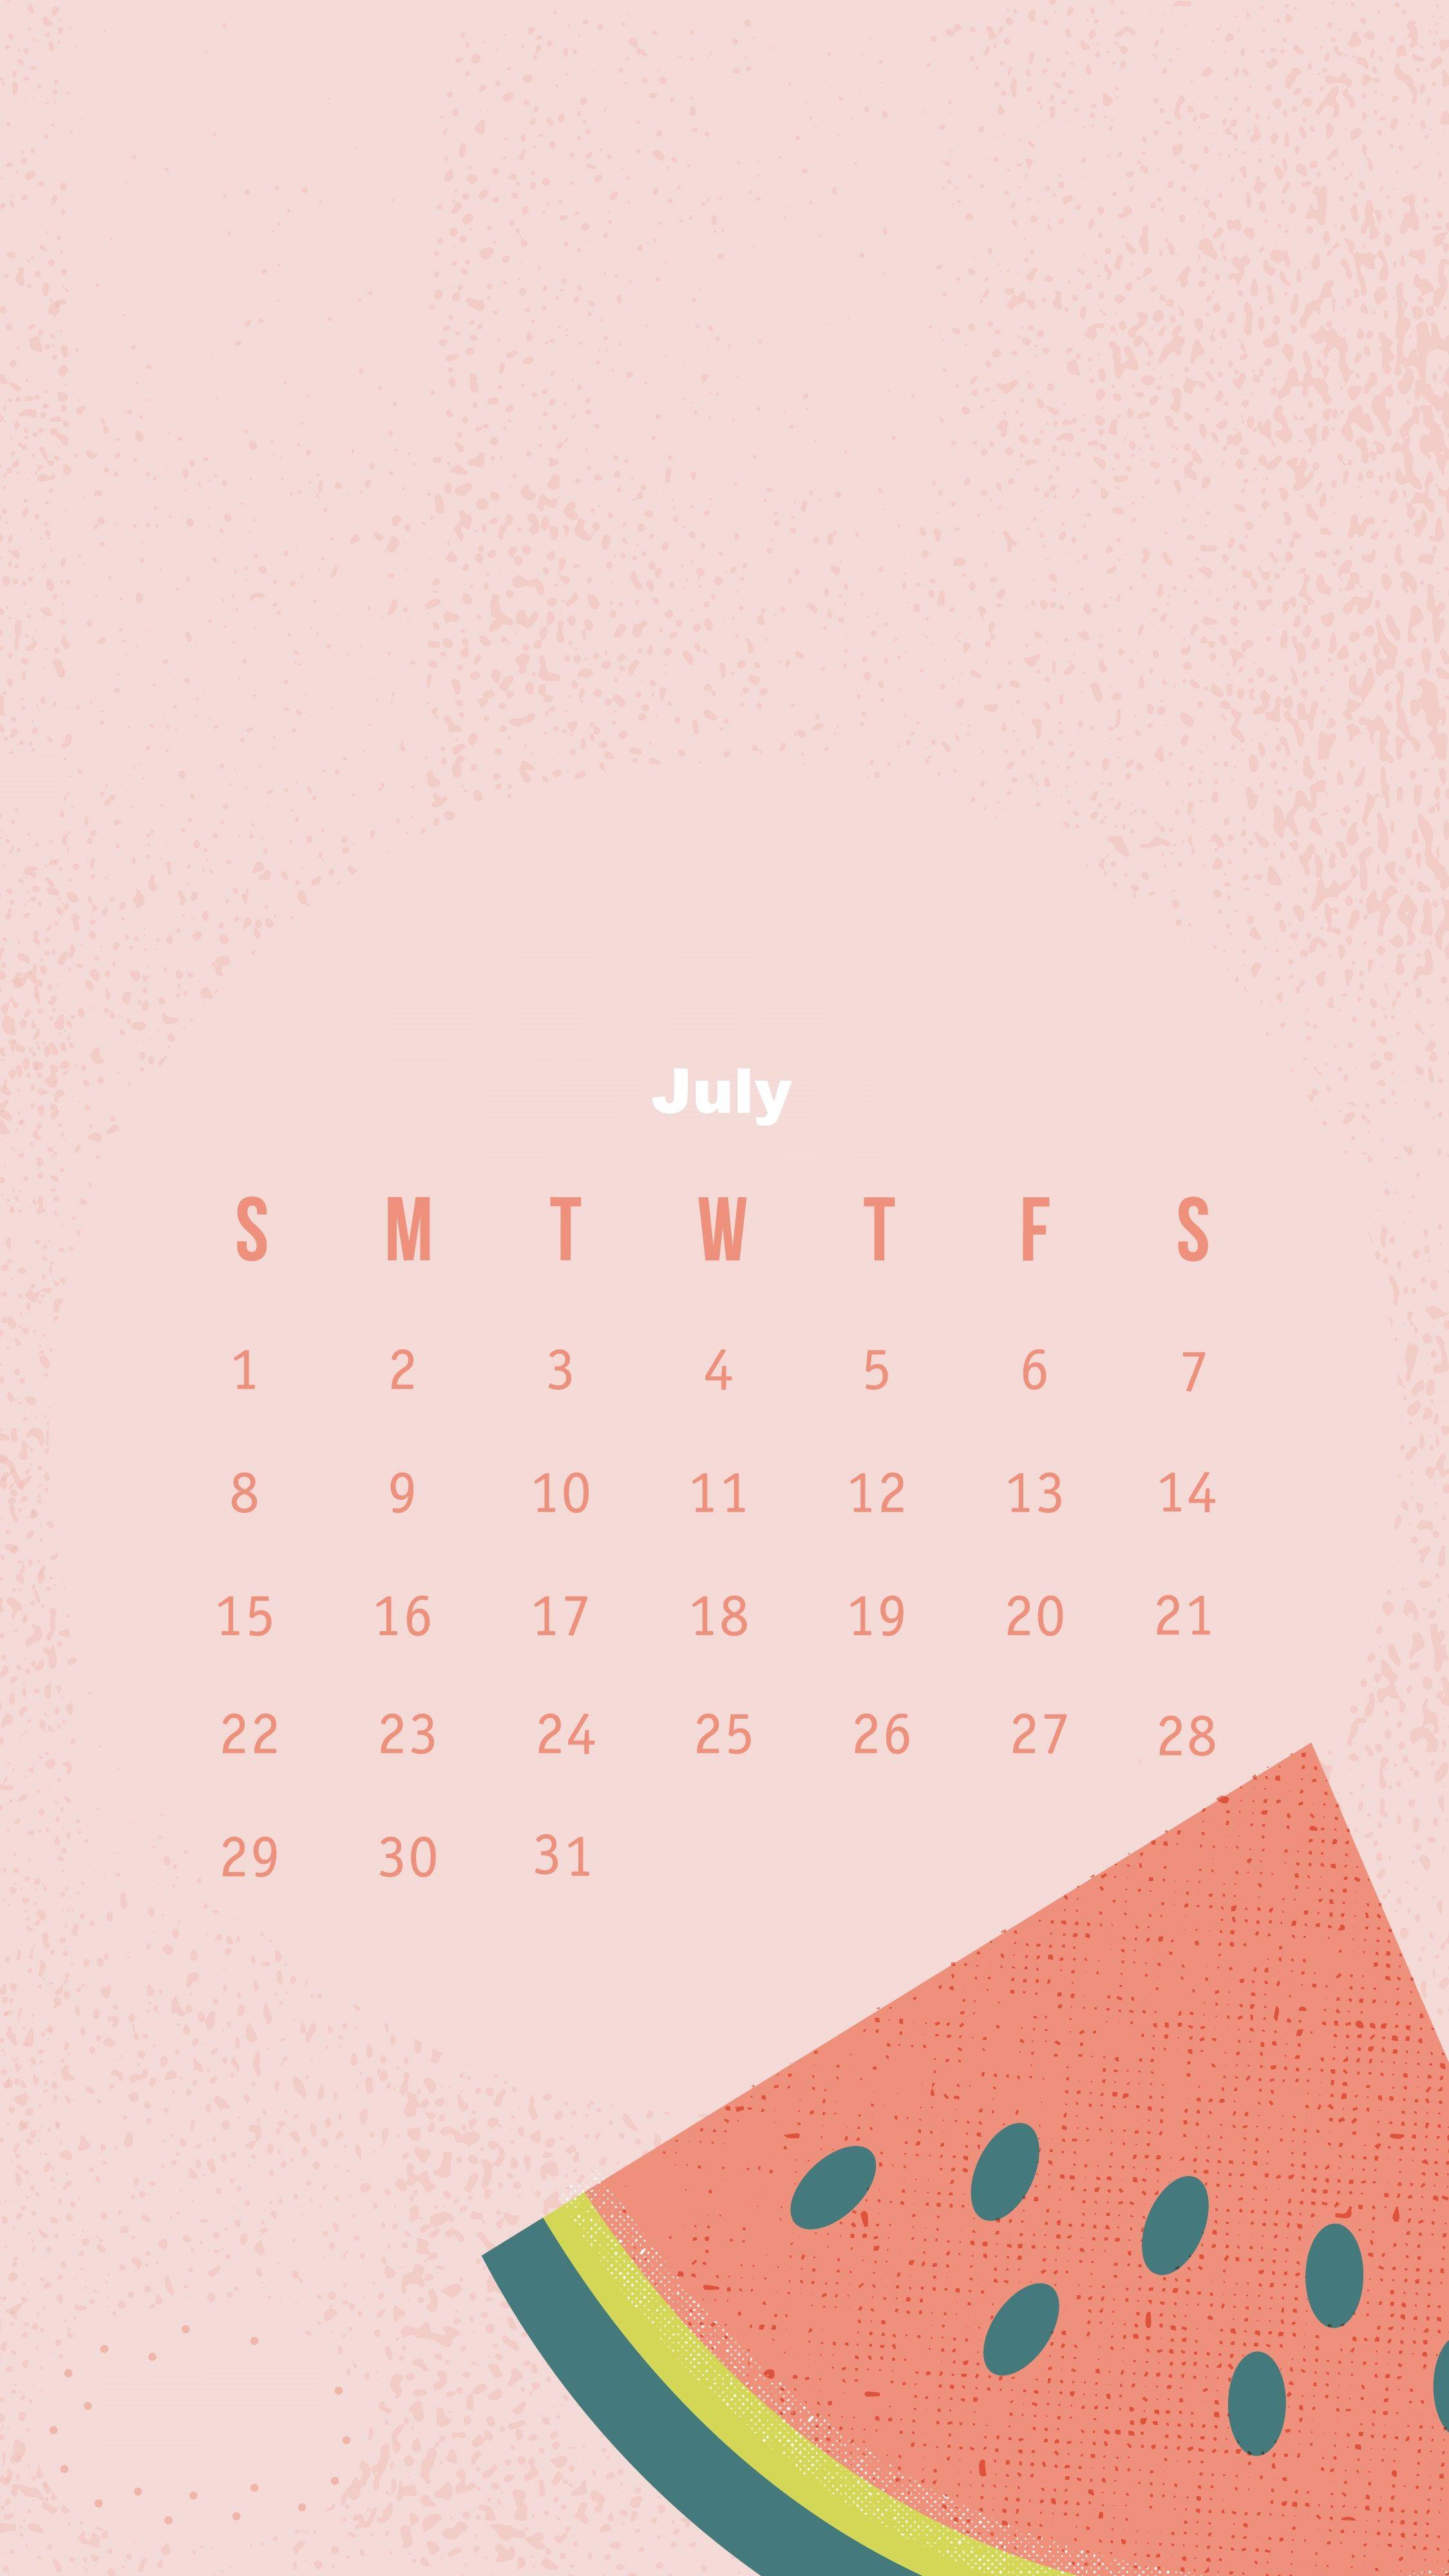 July 2018 iPhone Calendar Wallpaper. Calendar 2018